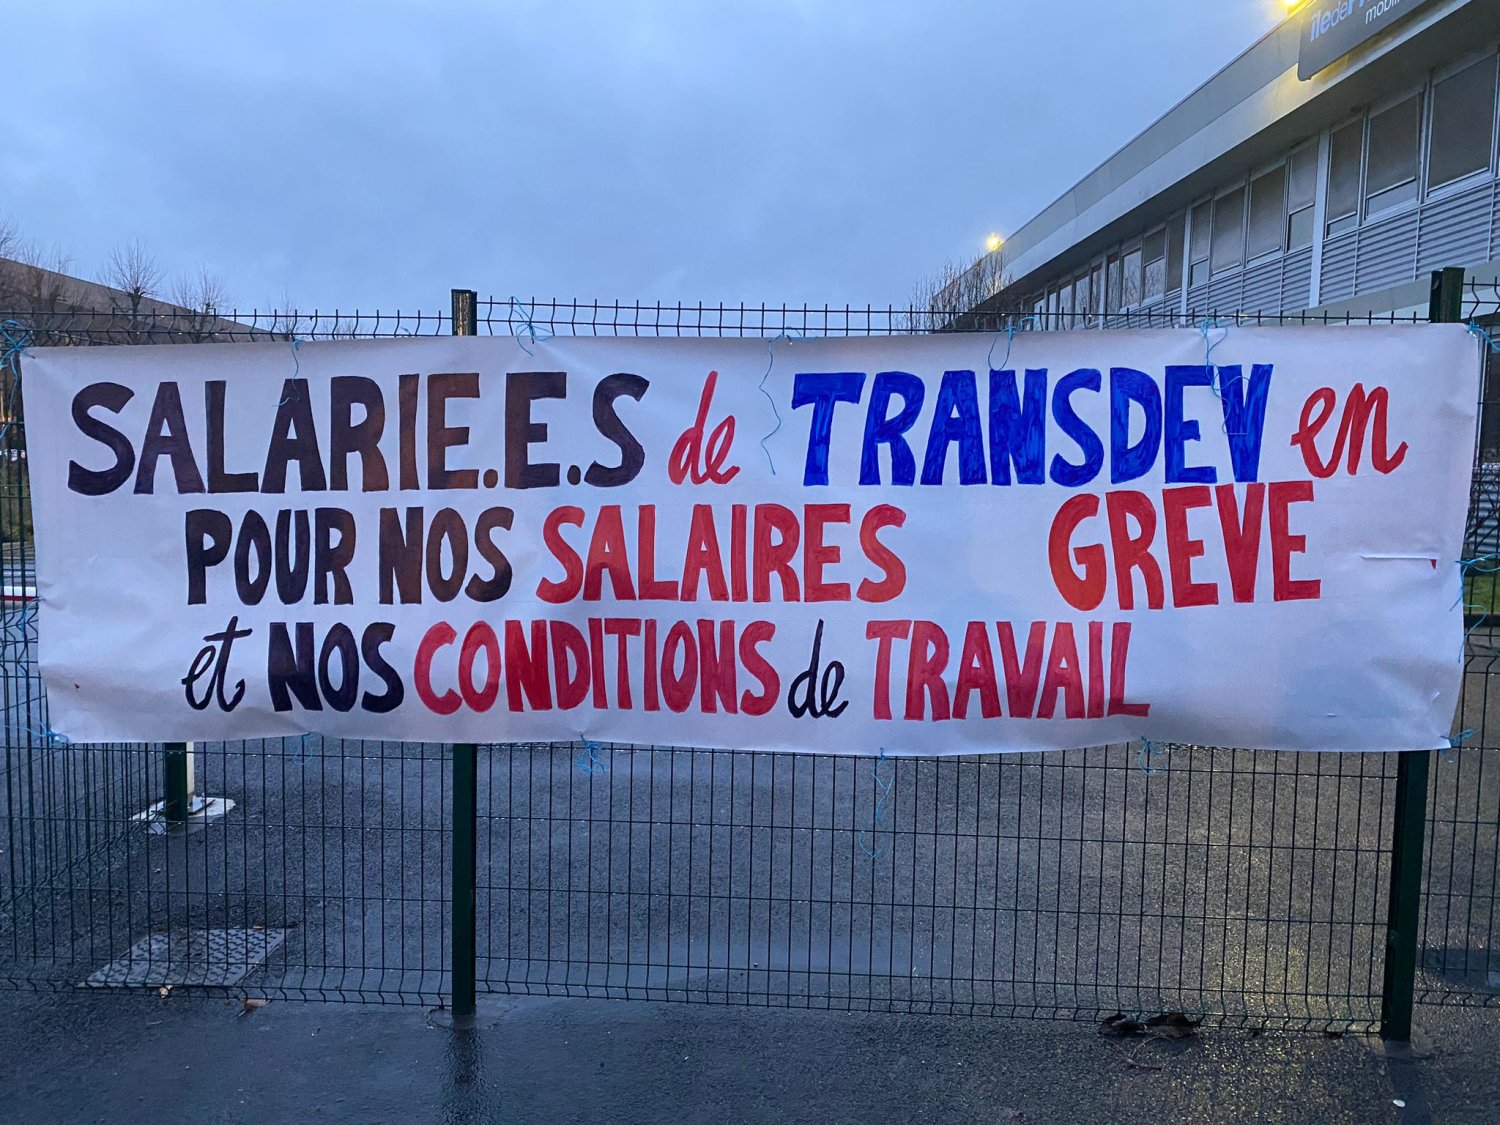  « Il faut se synchroniser entre nous » : les dépôts Transdev de Villepinte et Tremblay rentrent en grève